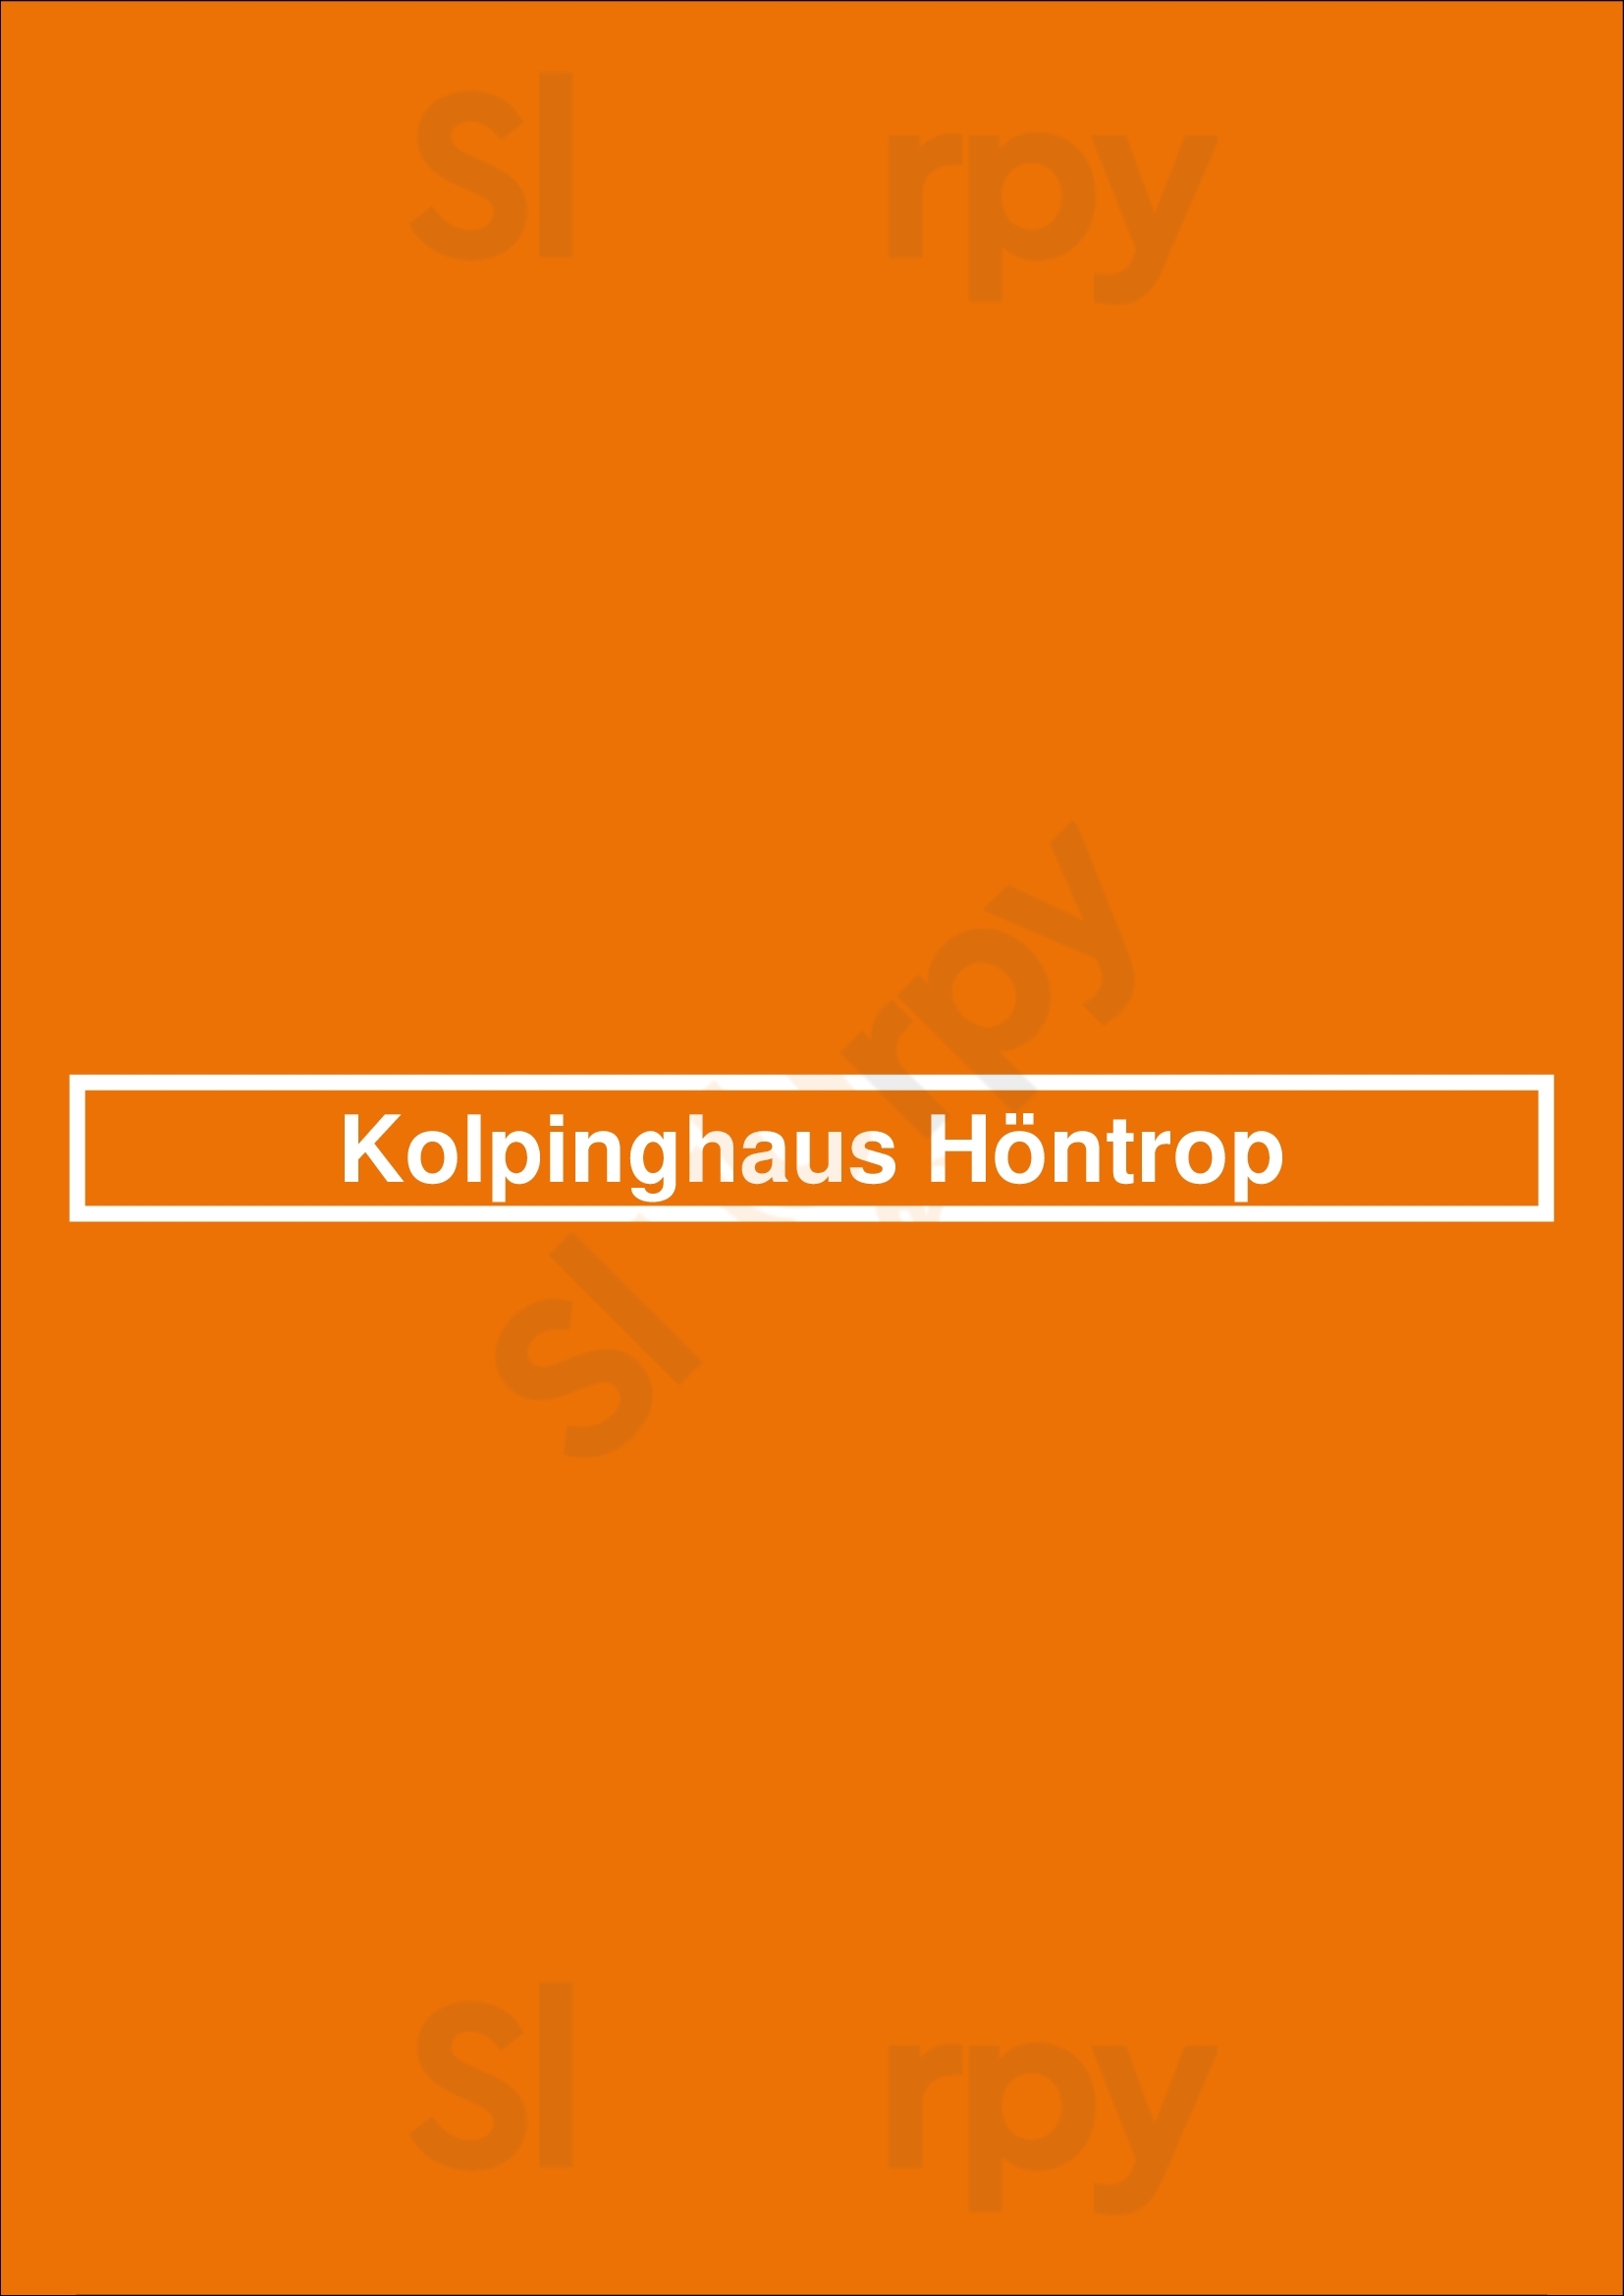 Kolpinghaus Höntrop Bochum Menu - 1